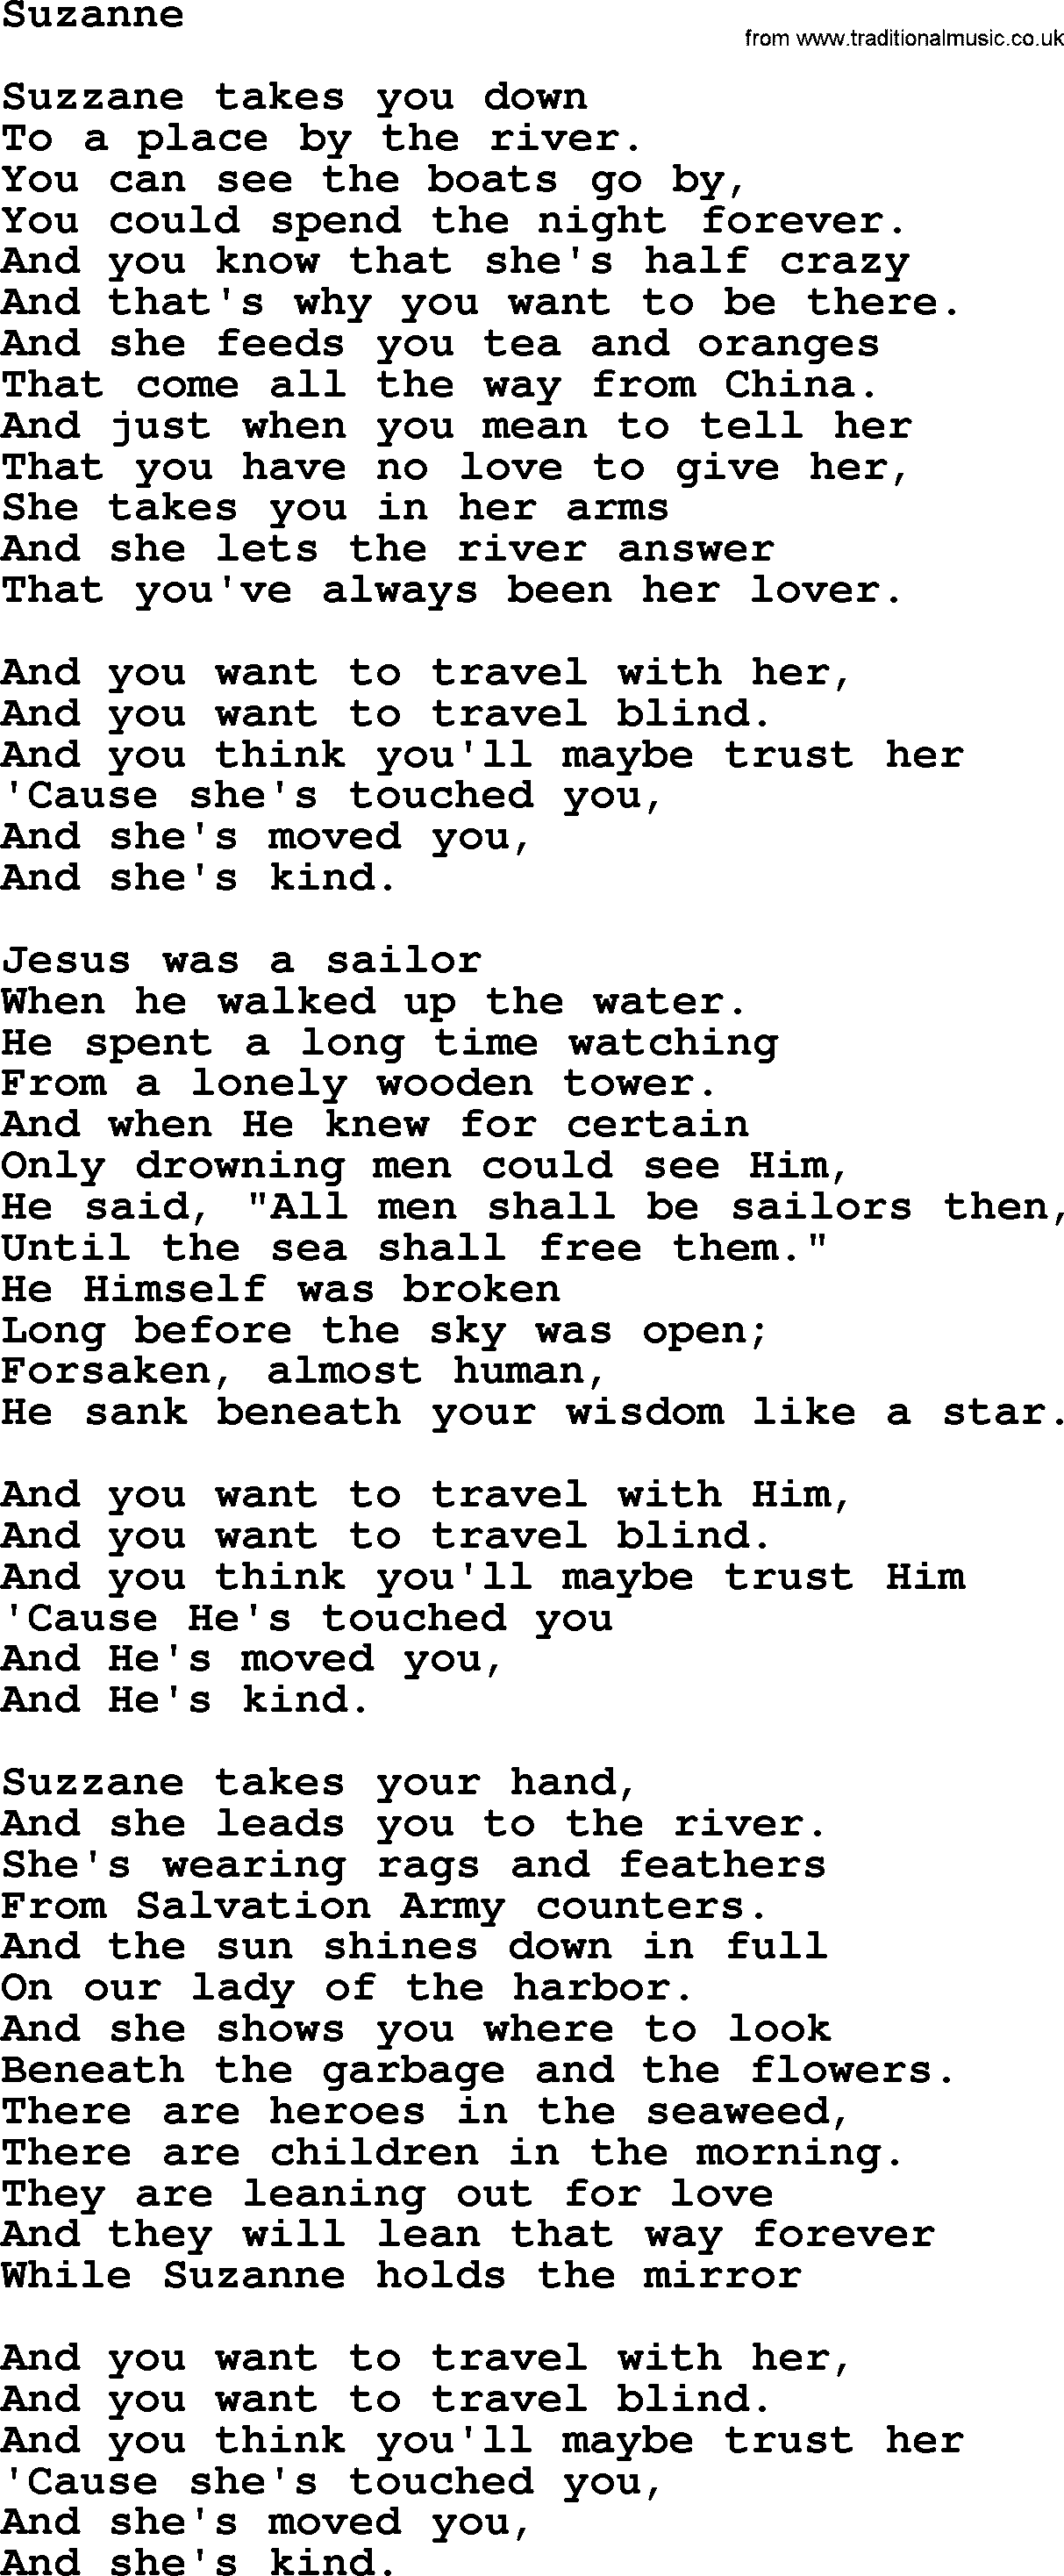 Joan Baez song Suzanne, lyrics